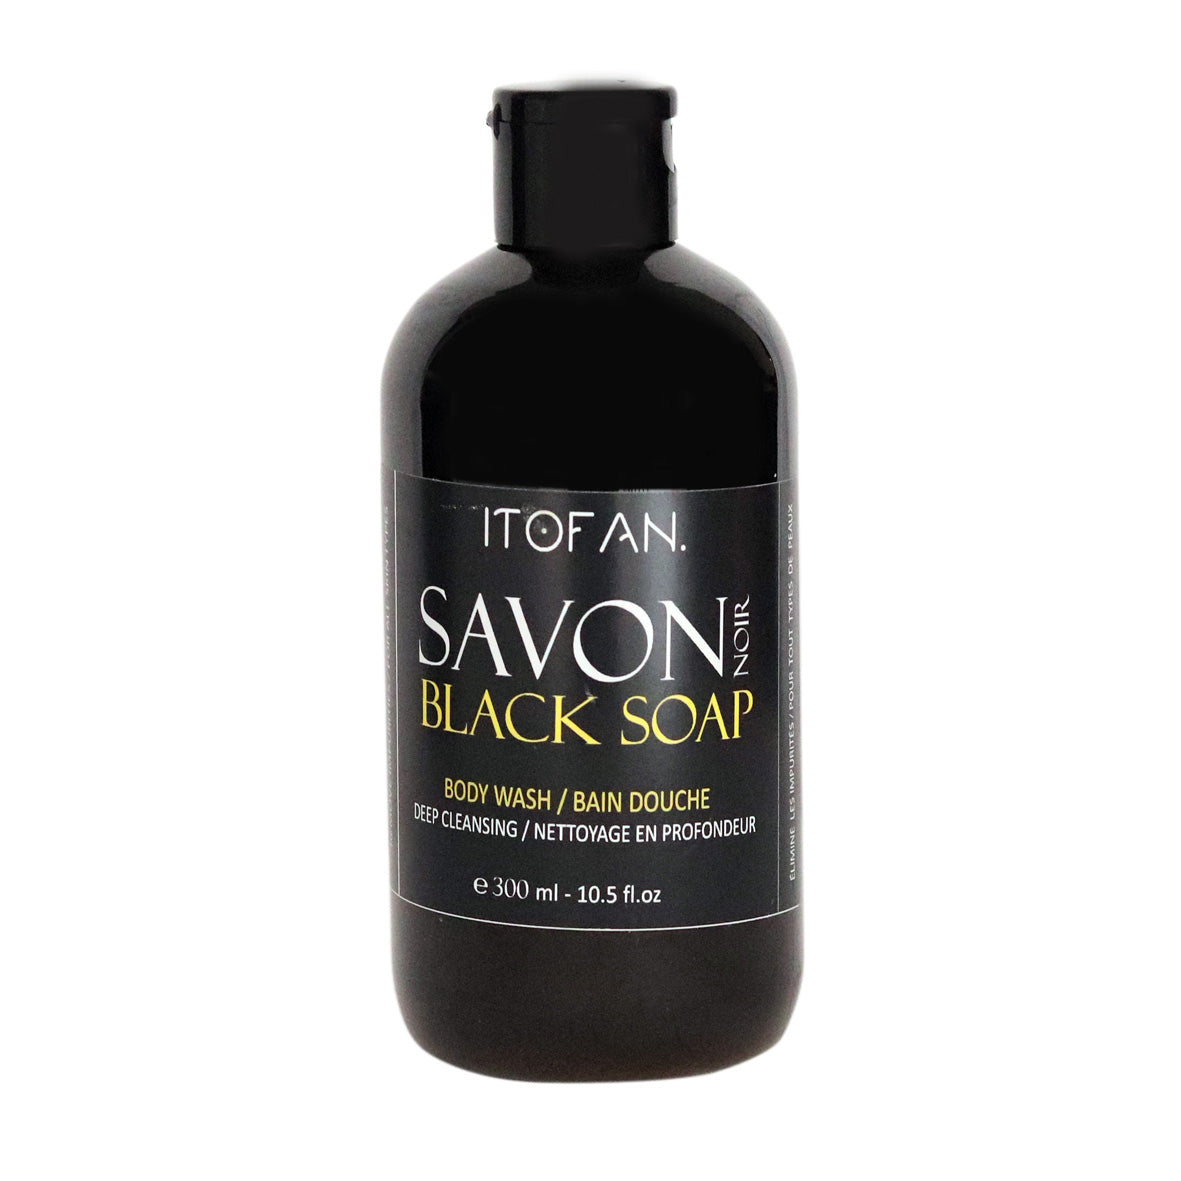 Original African Liquid Black Soap